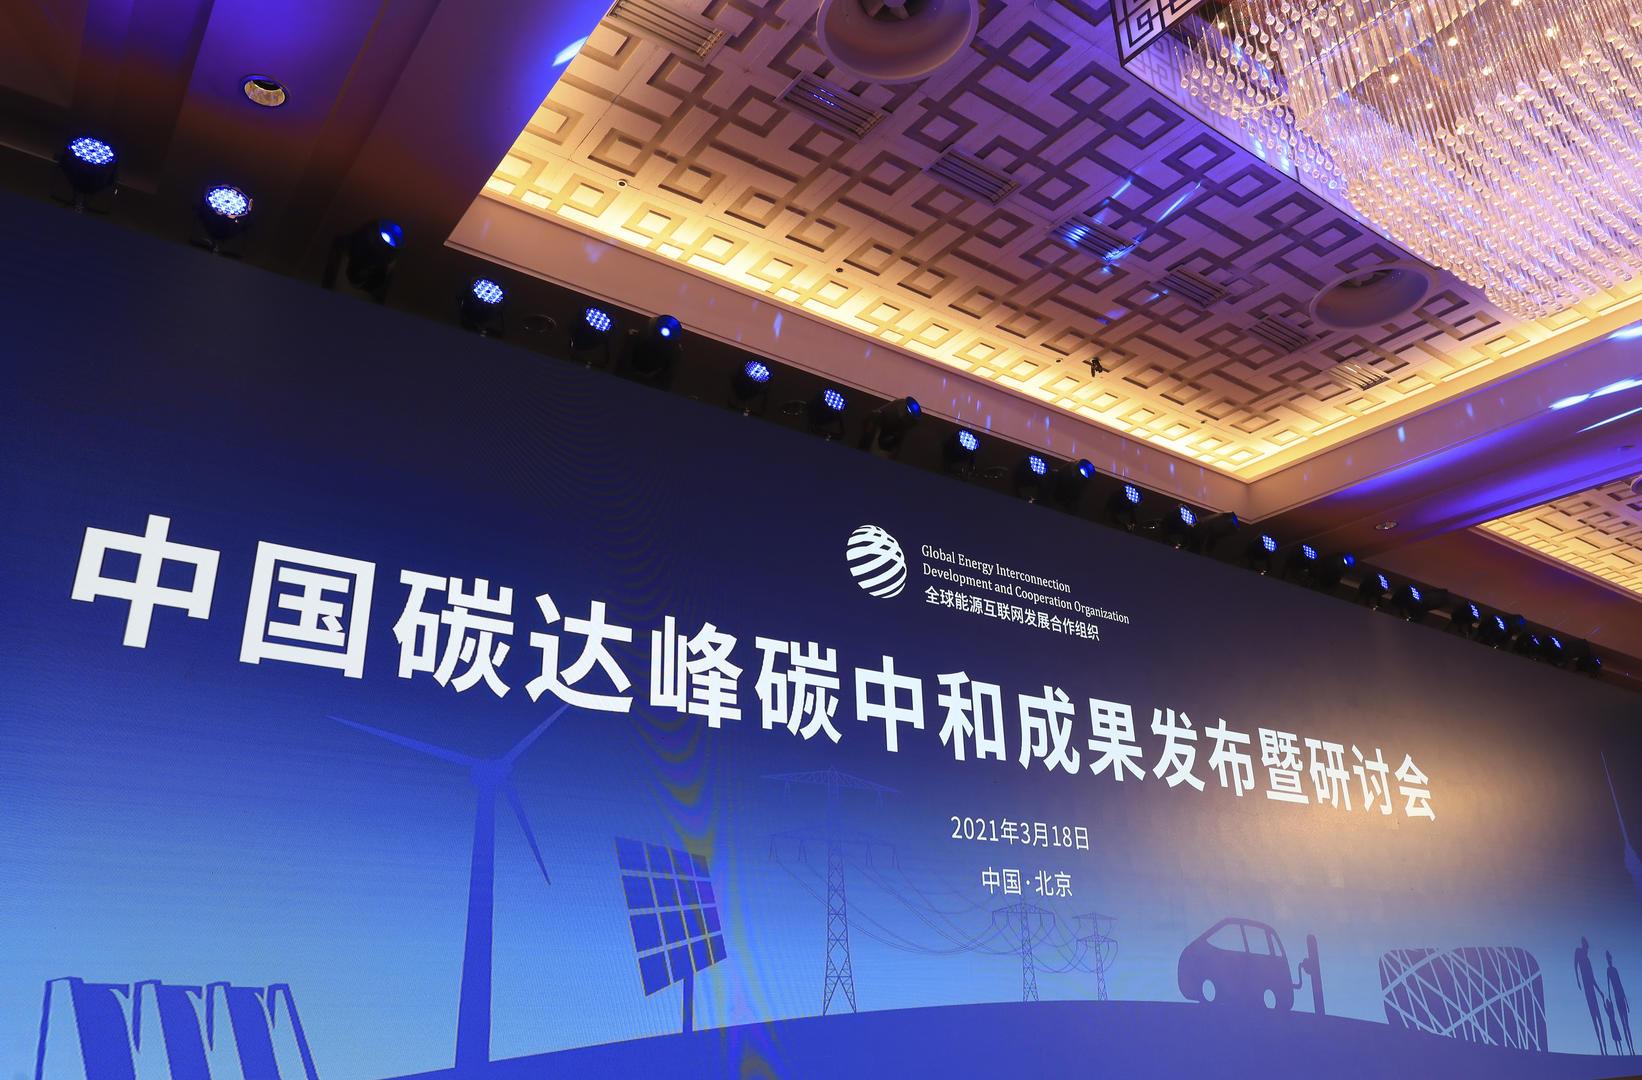 ↑2021年3月18日，中国碳达峰碳中和成果发布暨研讨会在北京召开 图据视觉中国